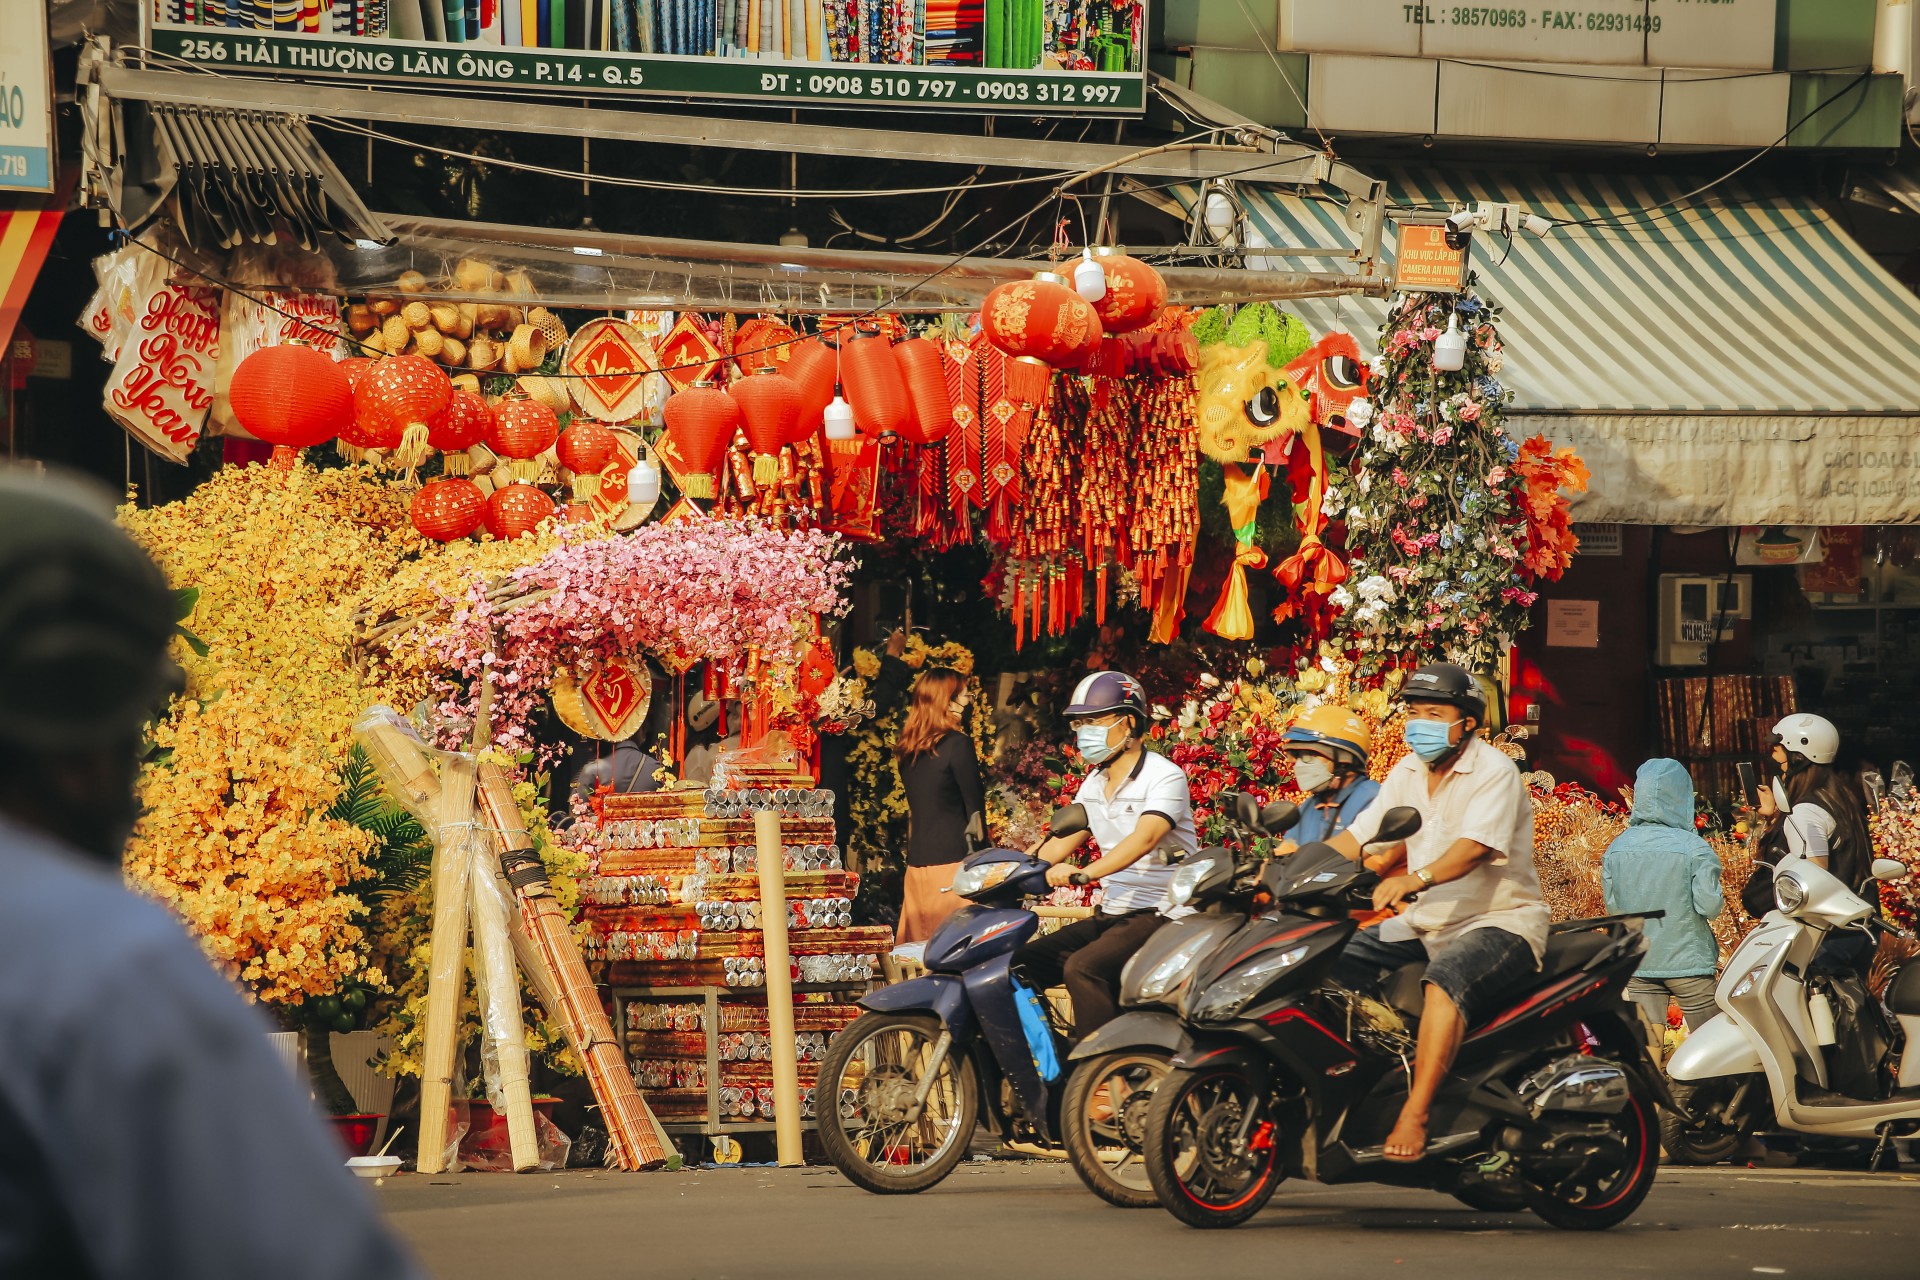 Chợ Lớn những ngày đón xuân: Lộng lẫy sắc đỏ, vàng - rộn ràng chào năm mới